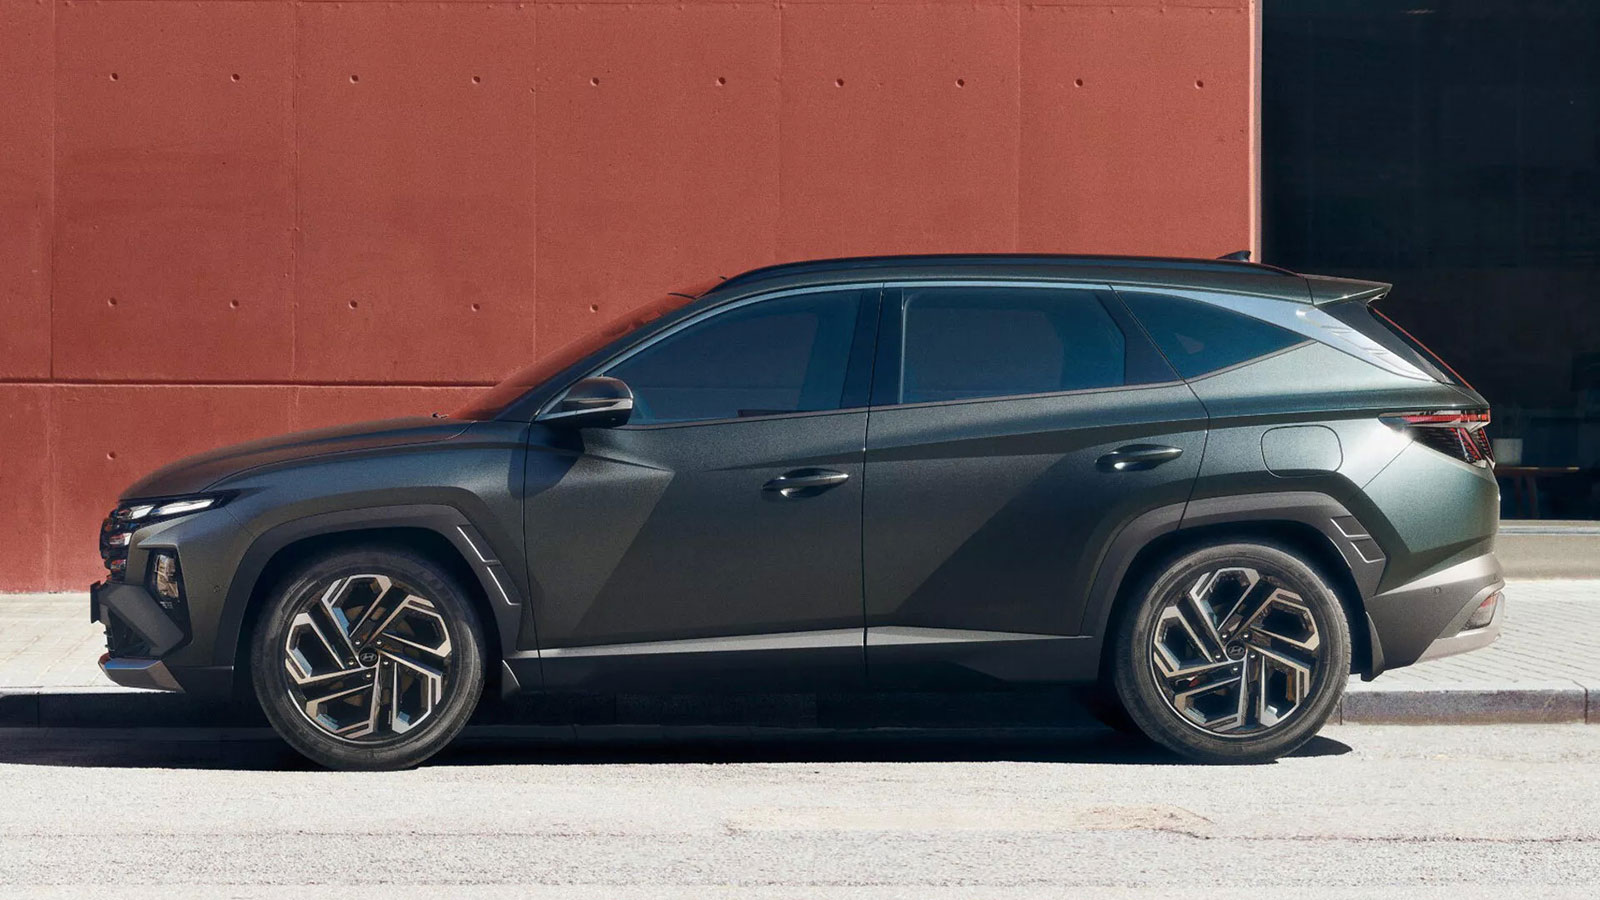 Νέα εμφάνιση και αλλαγμένη καμπίνα για το ανανεωμένο Hyundai Tucson